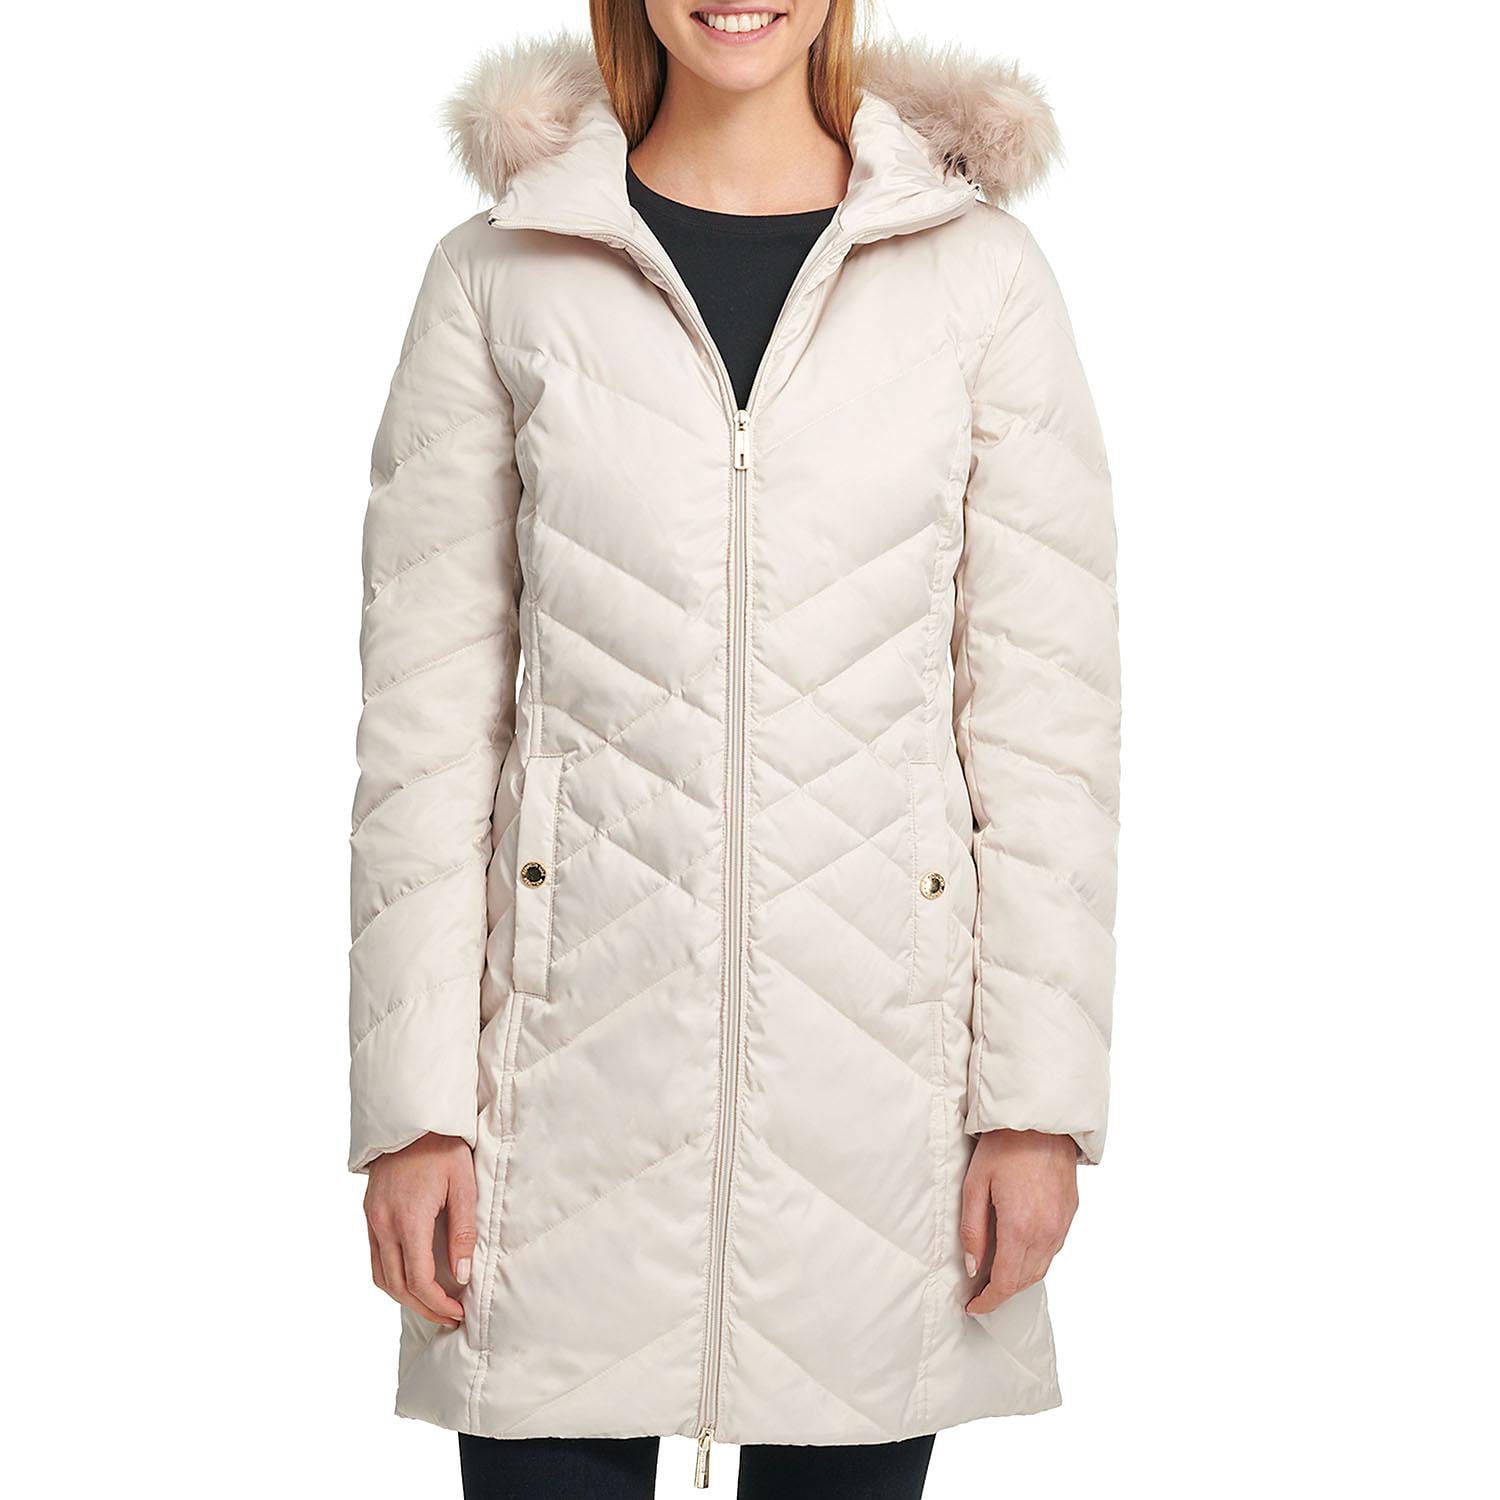 Kenneth Cole Women's Long Down Jacket in Frost, Large - Walmart.com